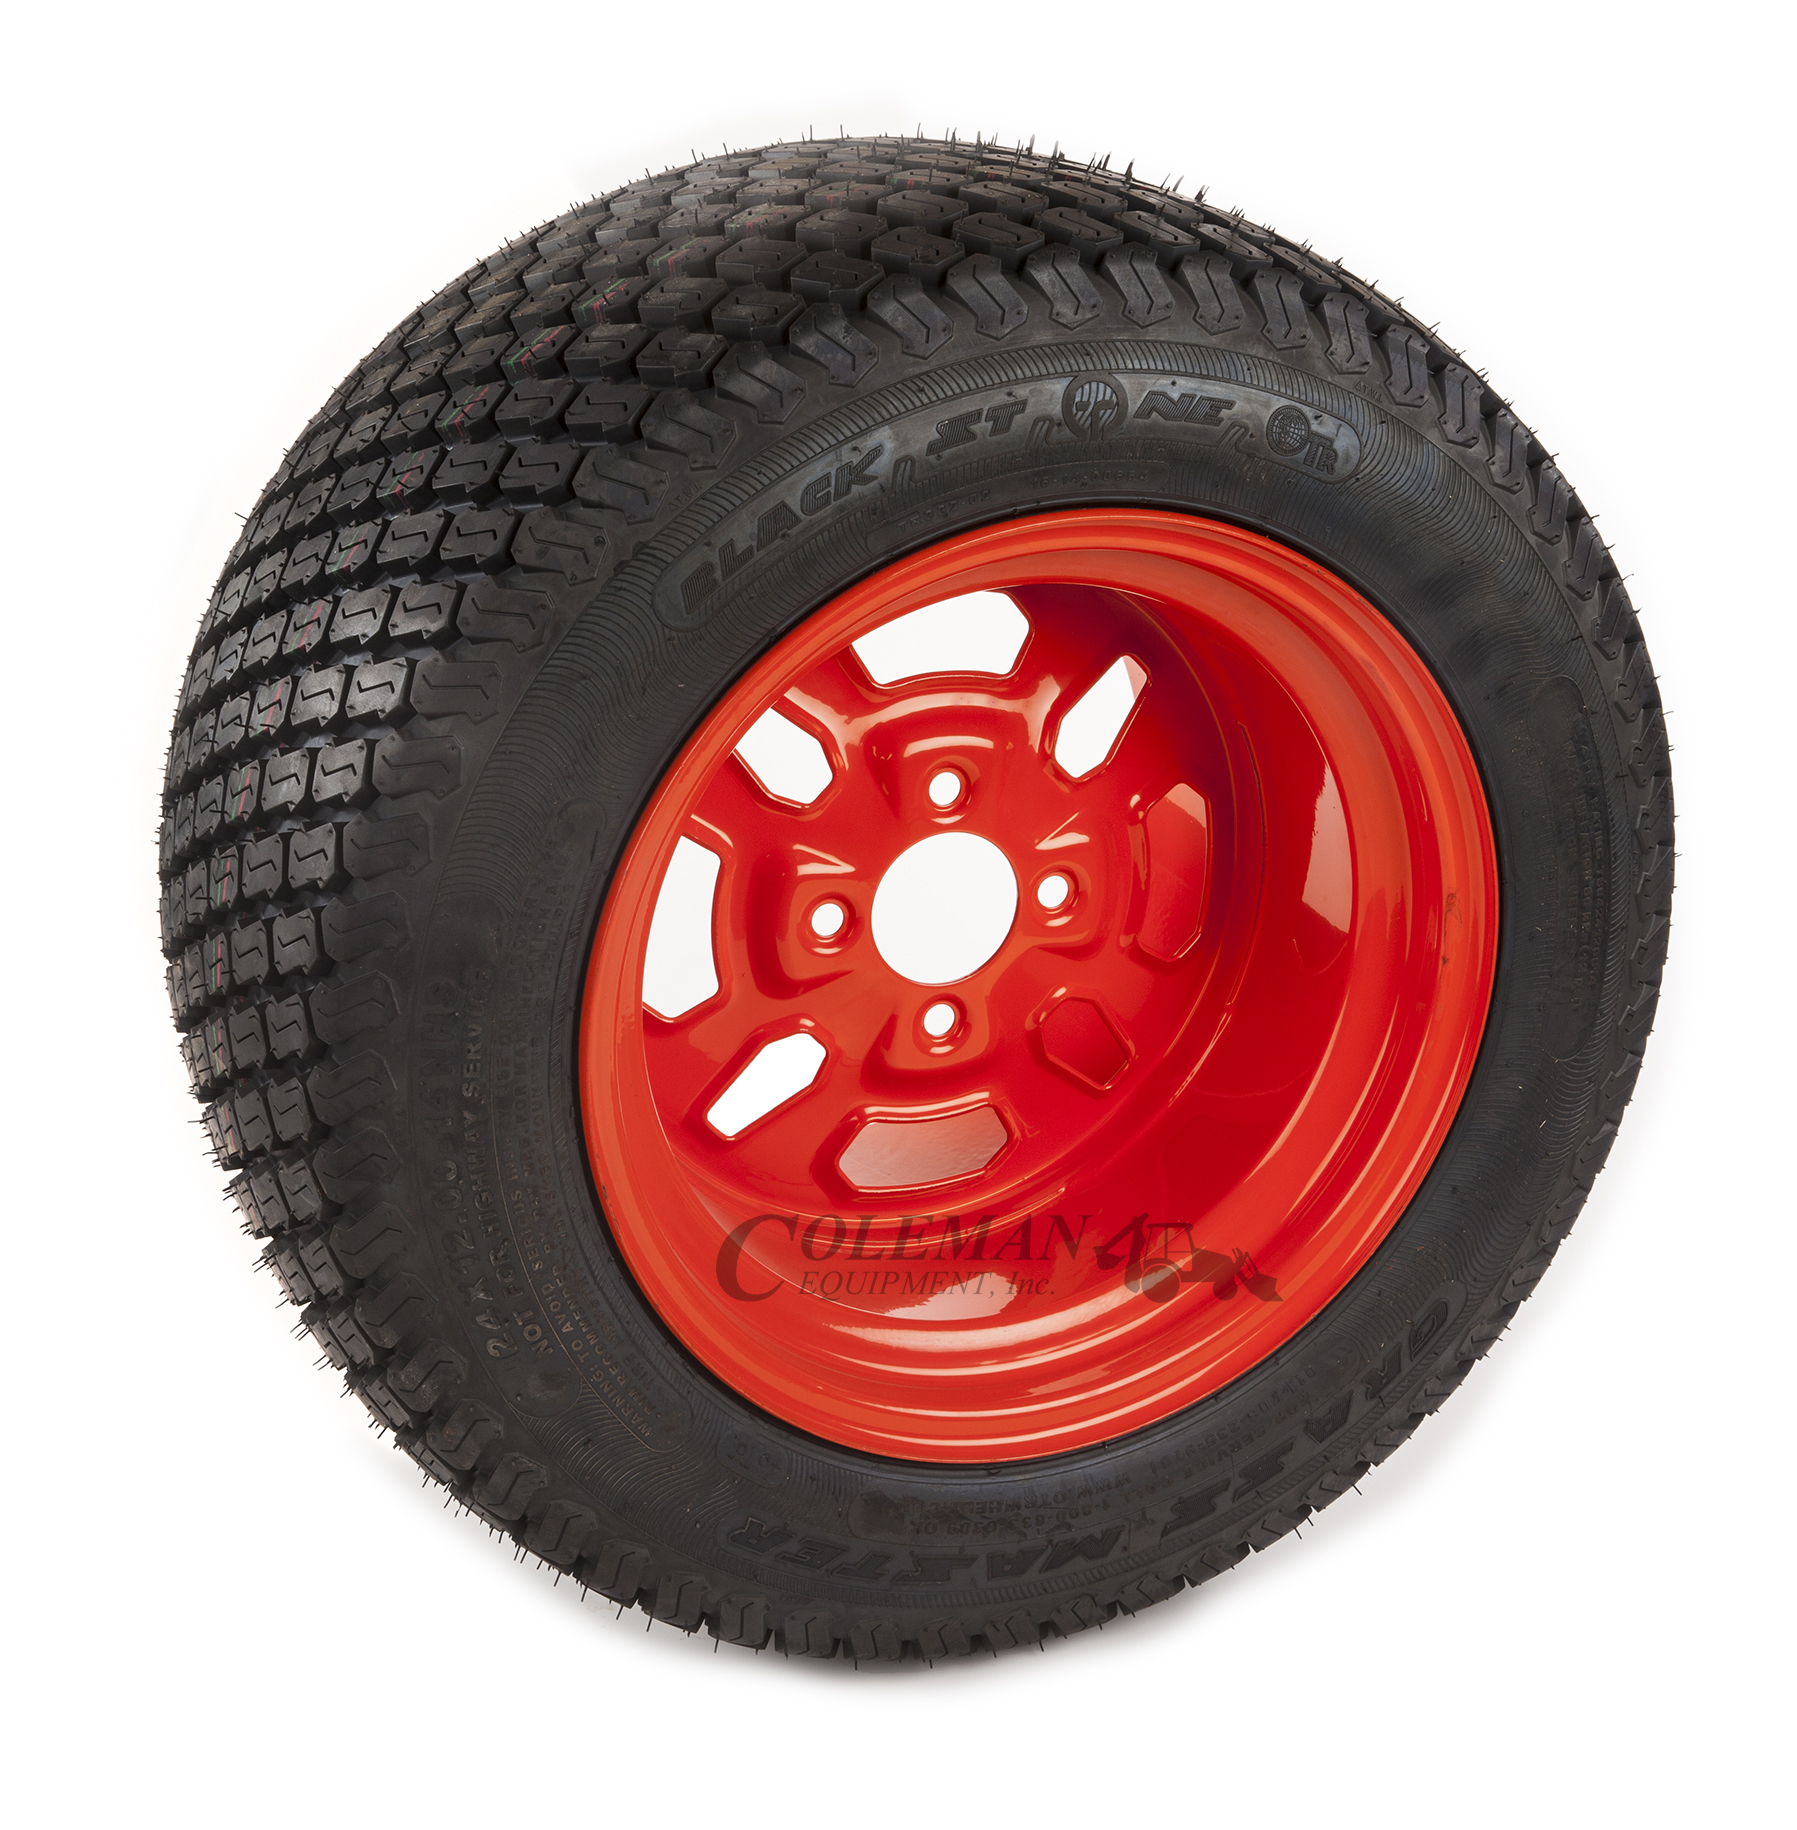 Kubota Rear Tire and Wheel for Zero Turn Mowers (24X12-14) (K3071 